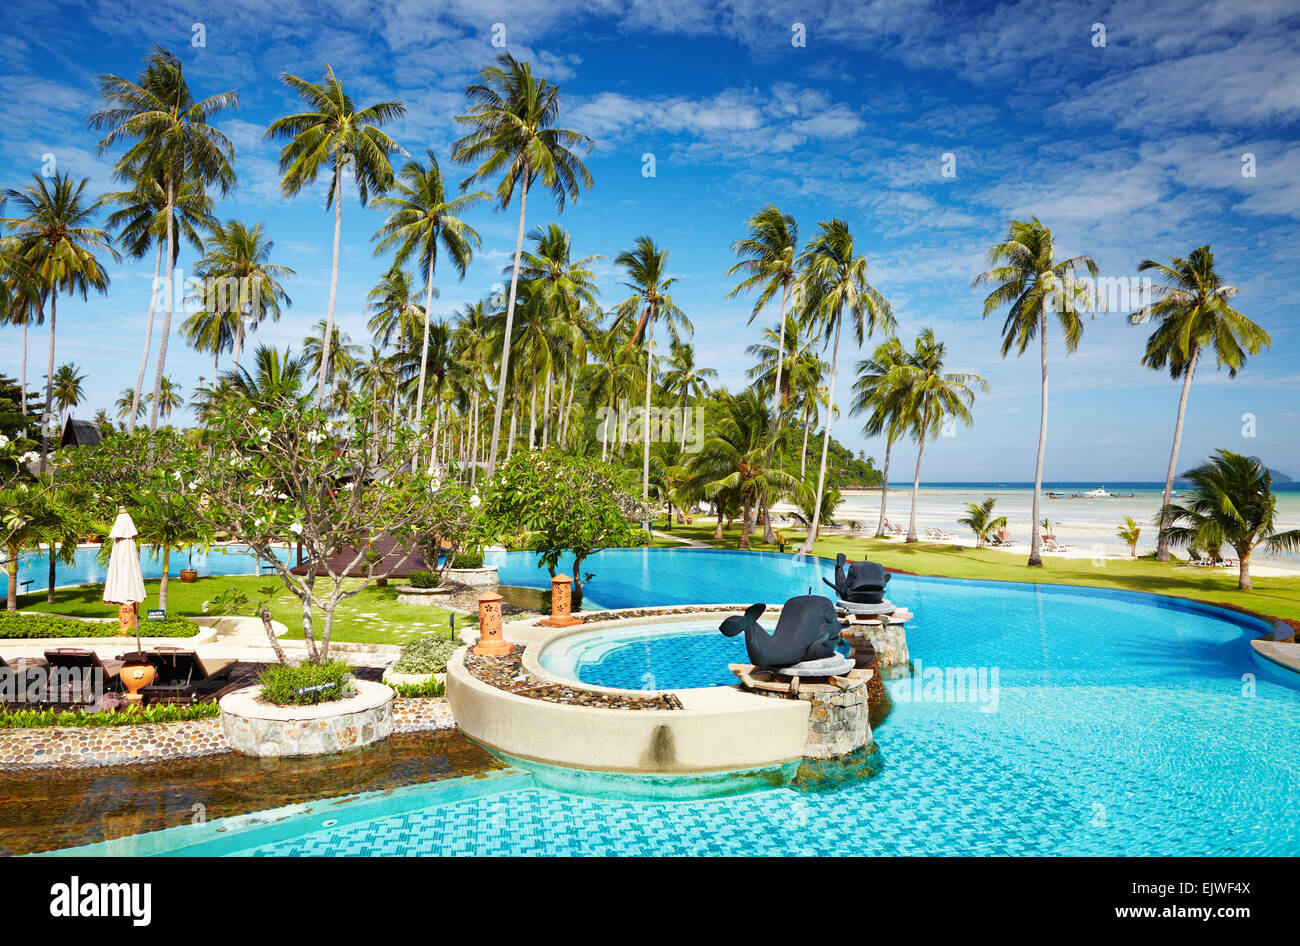 Zone de loisirs avec piscine sur la plage tropicale Banque D'Images